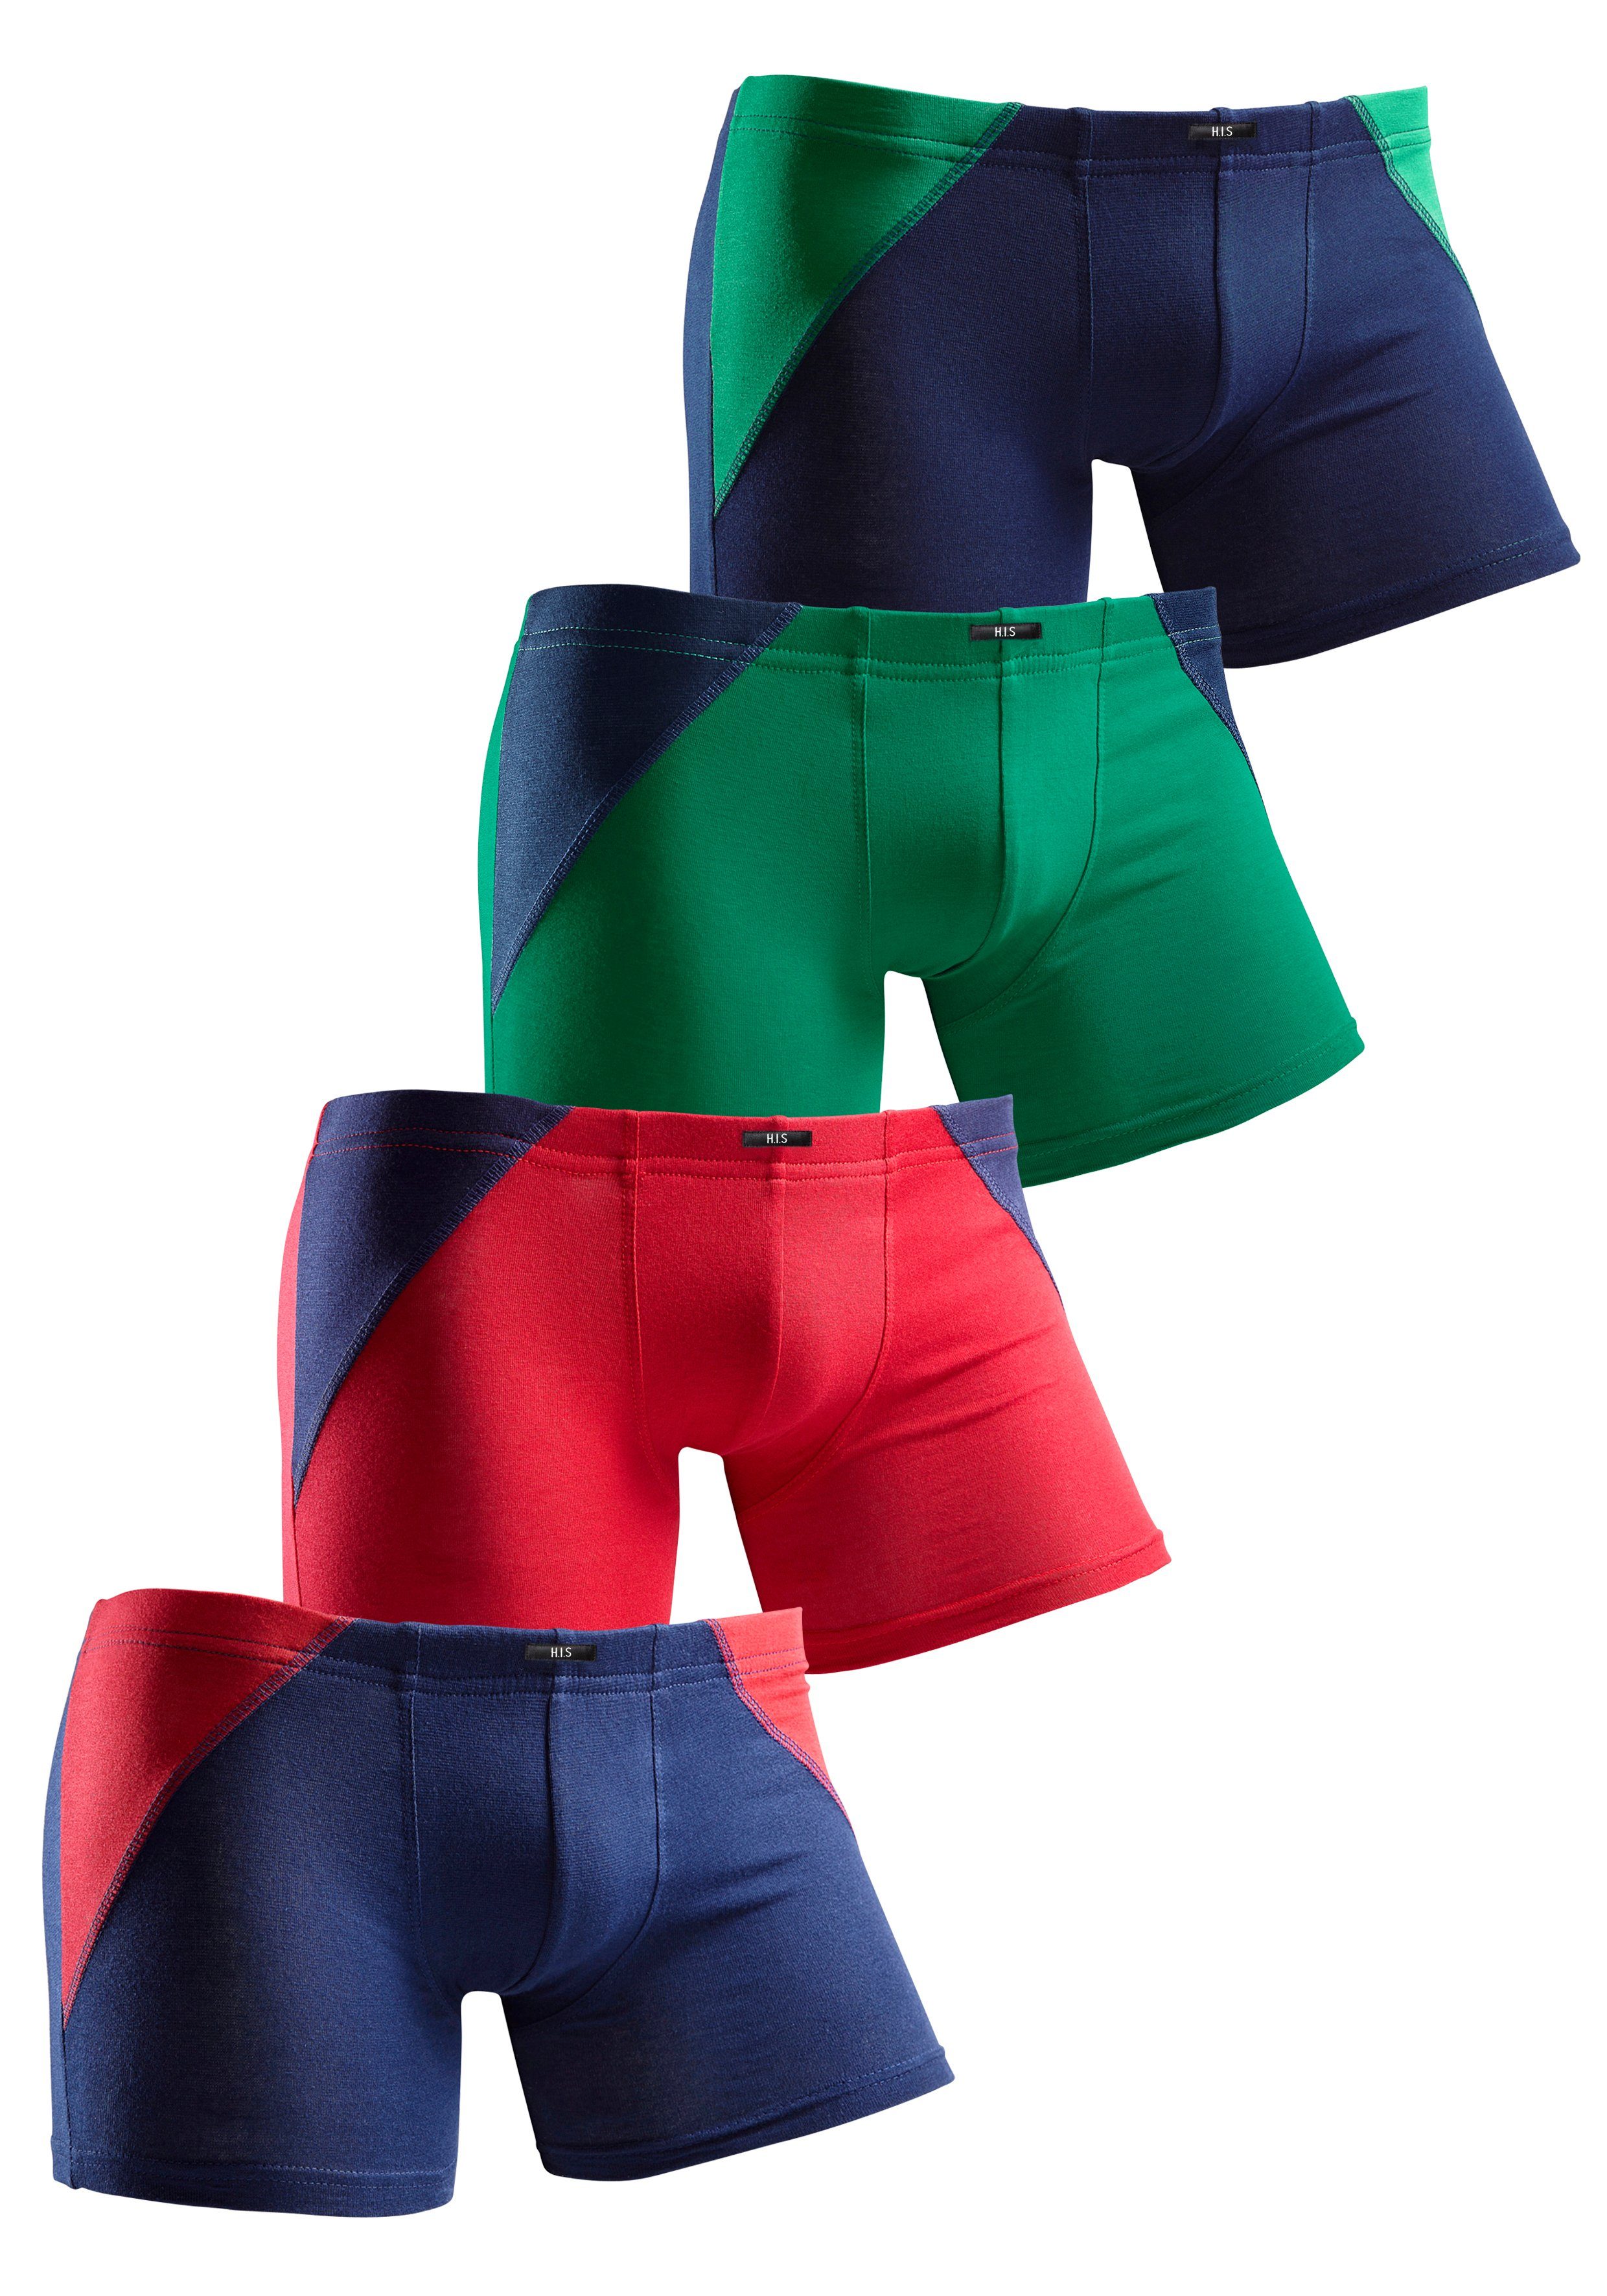 Colorblocking 4-St) einen mit für H.I.S coolem Auftritt grün-marine, marine-rot marine-grün, sportlichen Boxer rot-marine, (Packung,